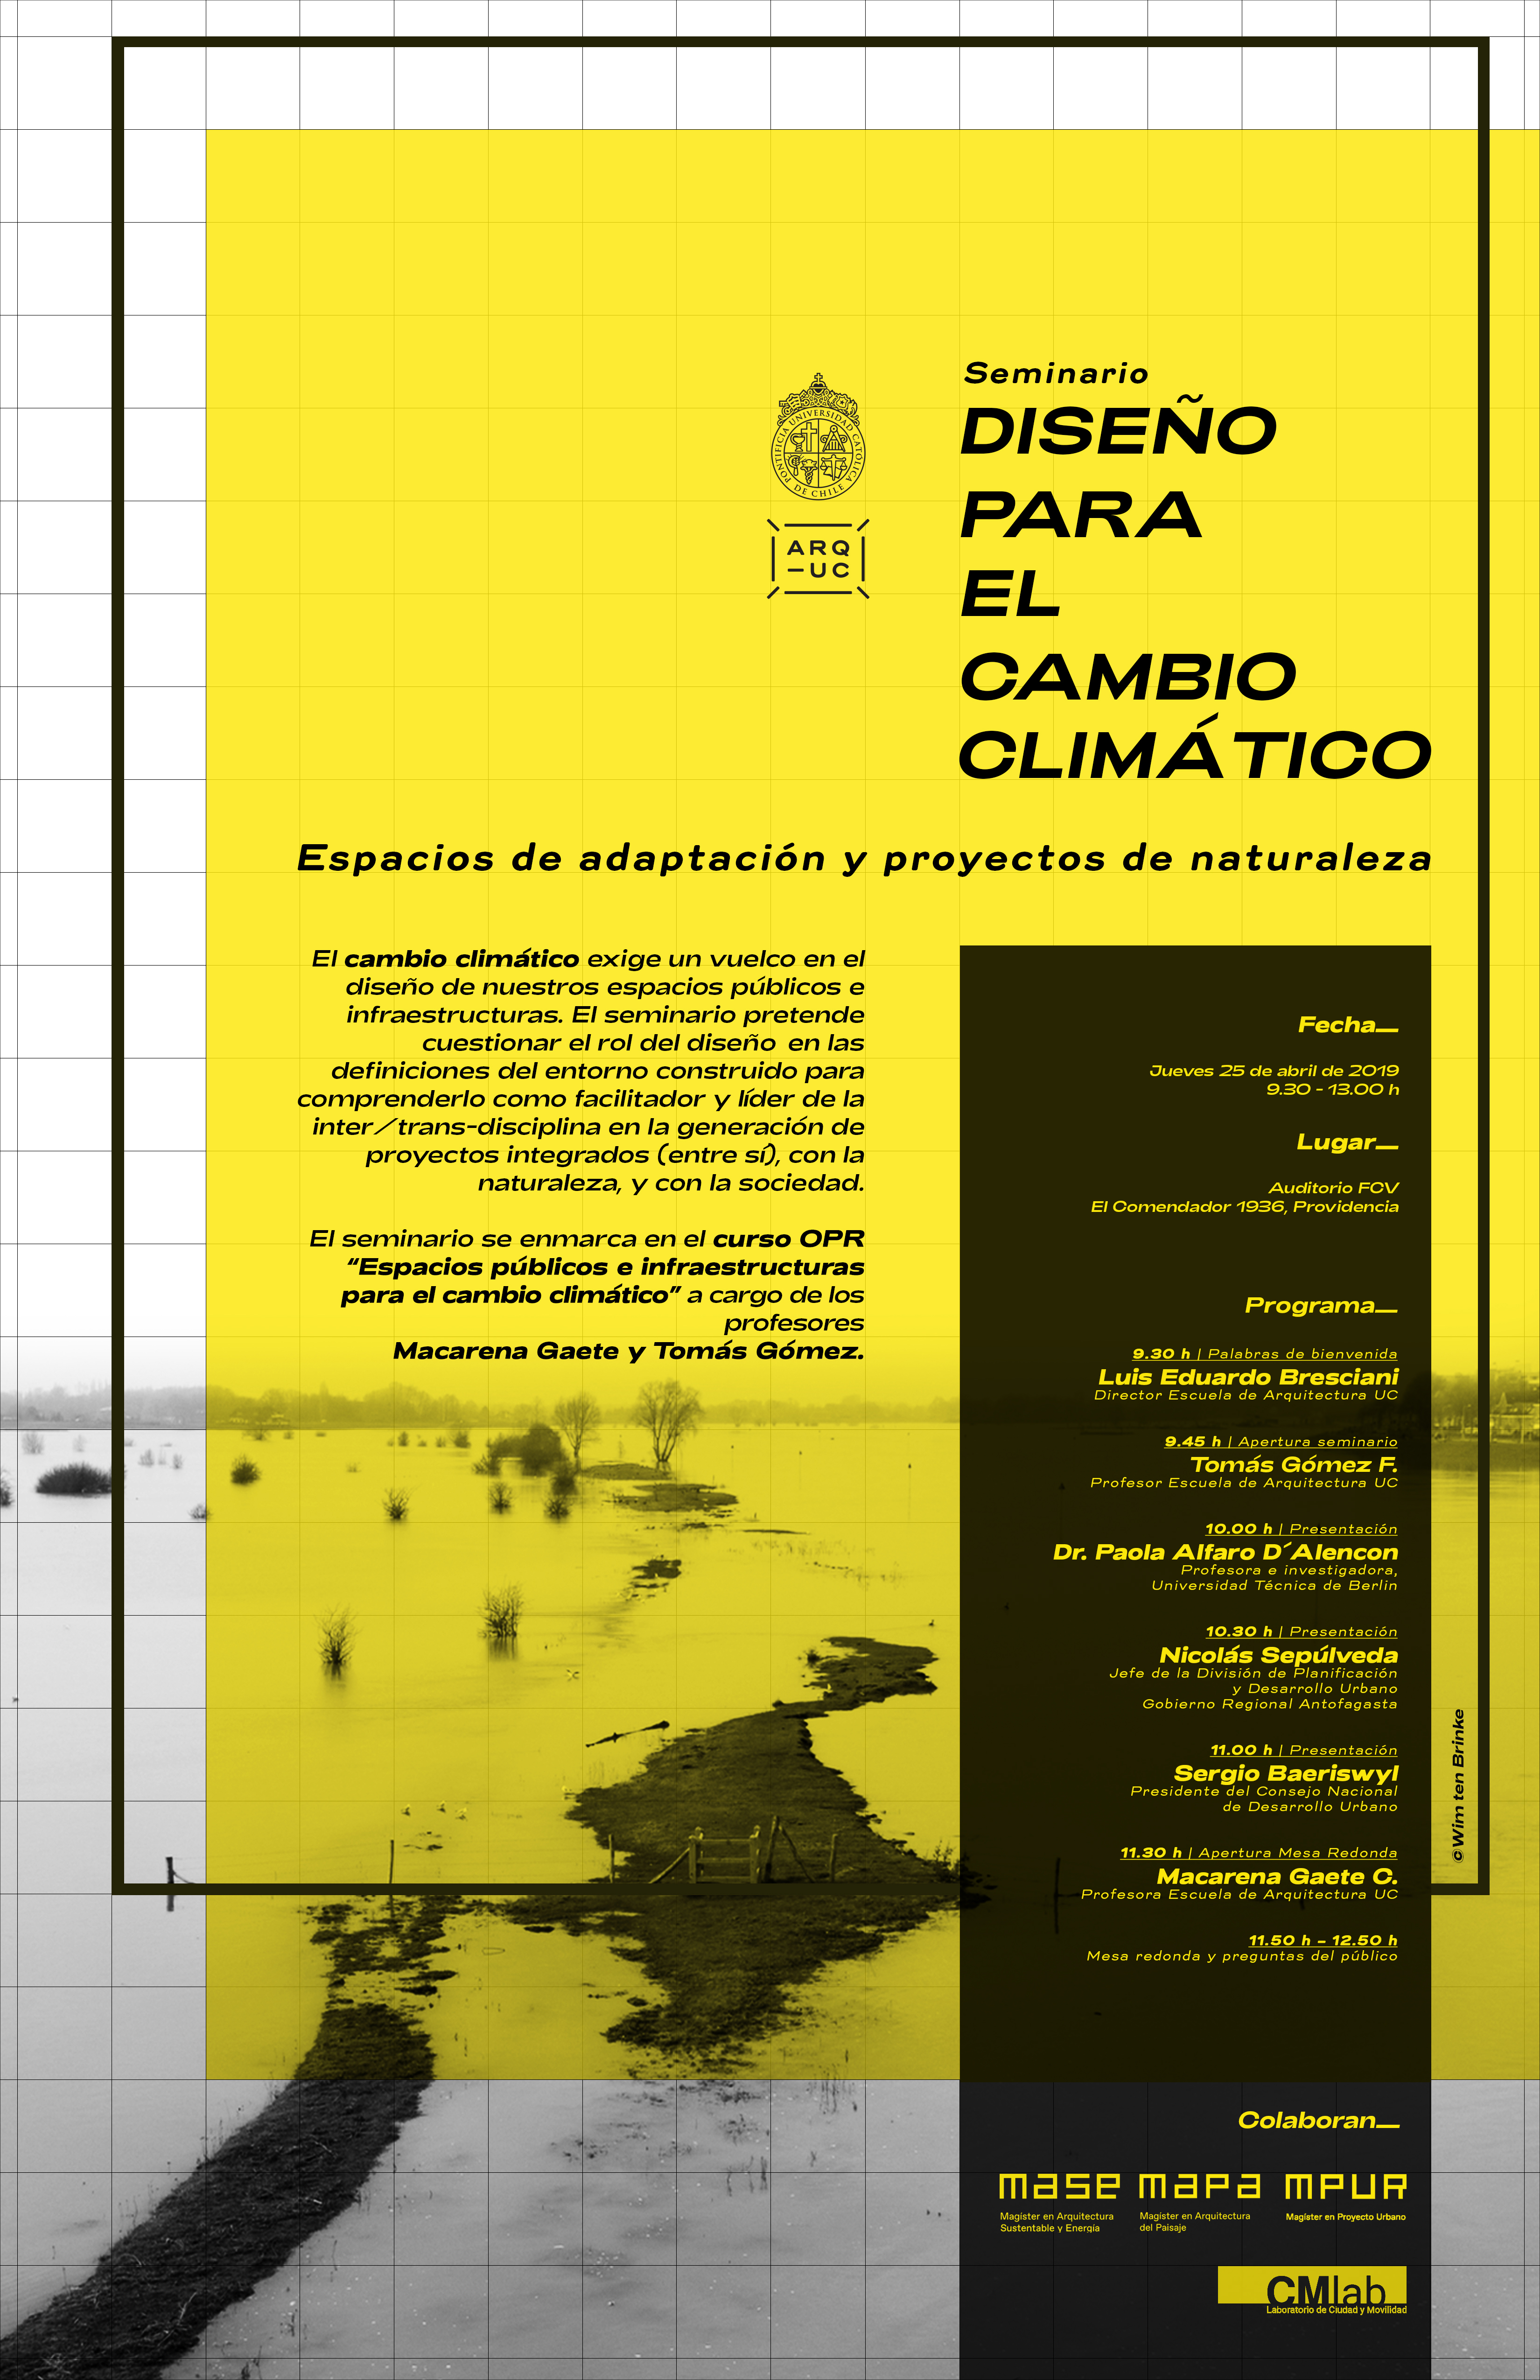 19-04-25_seminario_Diseno_para_el_cambio_climatico_con_programa_copy.jpg